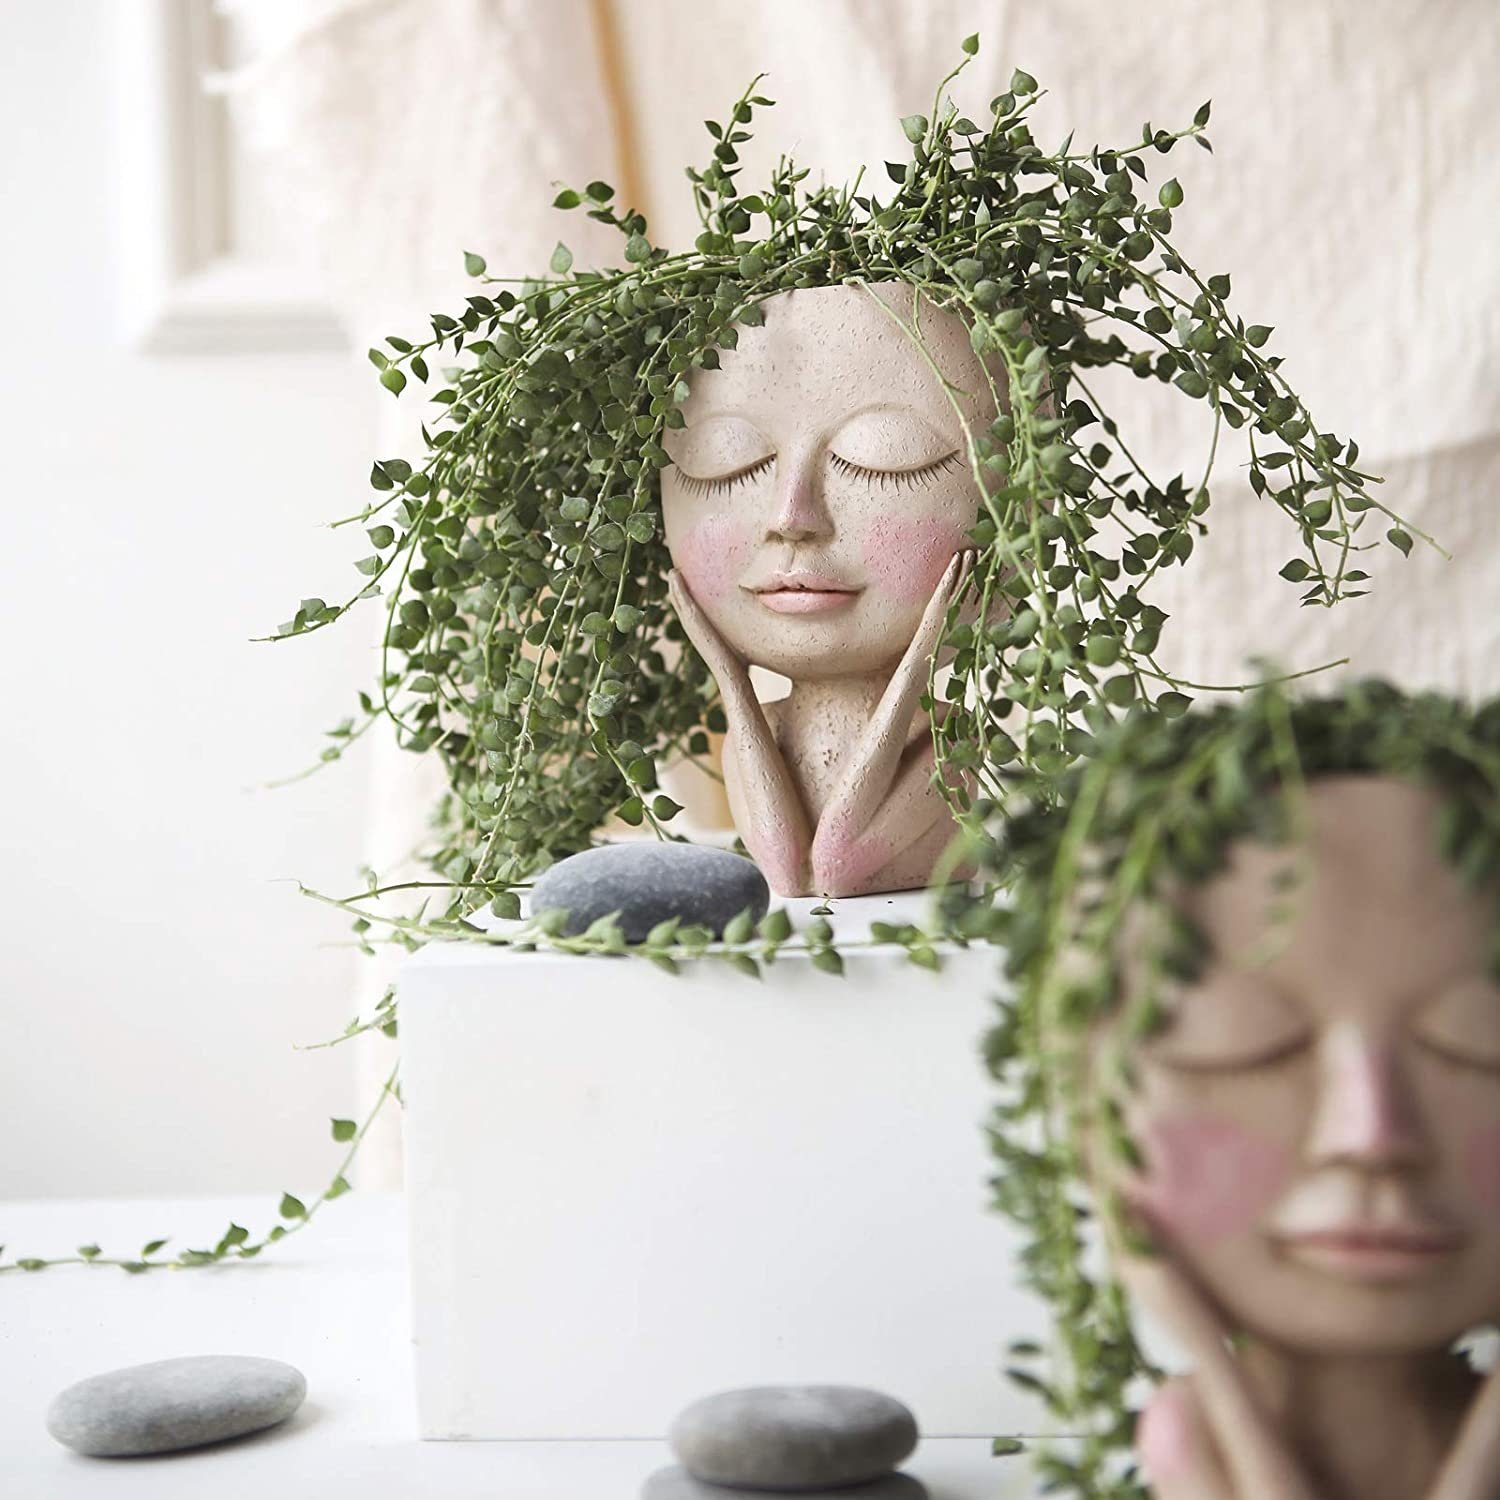 XDeer Blumentopf Blumentöpfe mit Design Design,Blumentöpfe Kopf mit Gesicht,Menschlicher Vase Menschlicher Hole, Drainage menschlicher Gesicht,kreative Gesicht Kopf